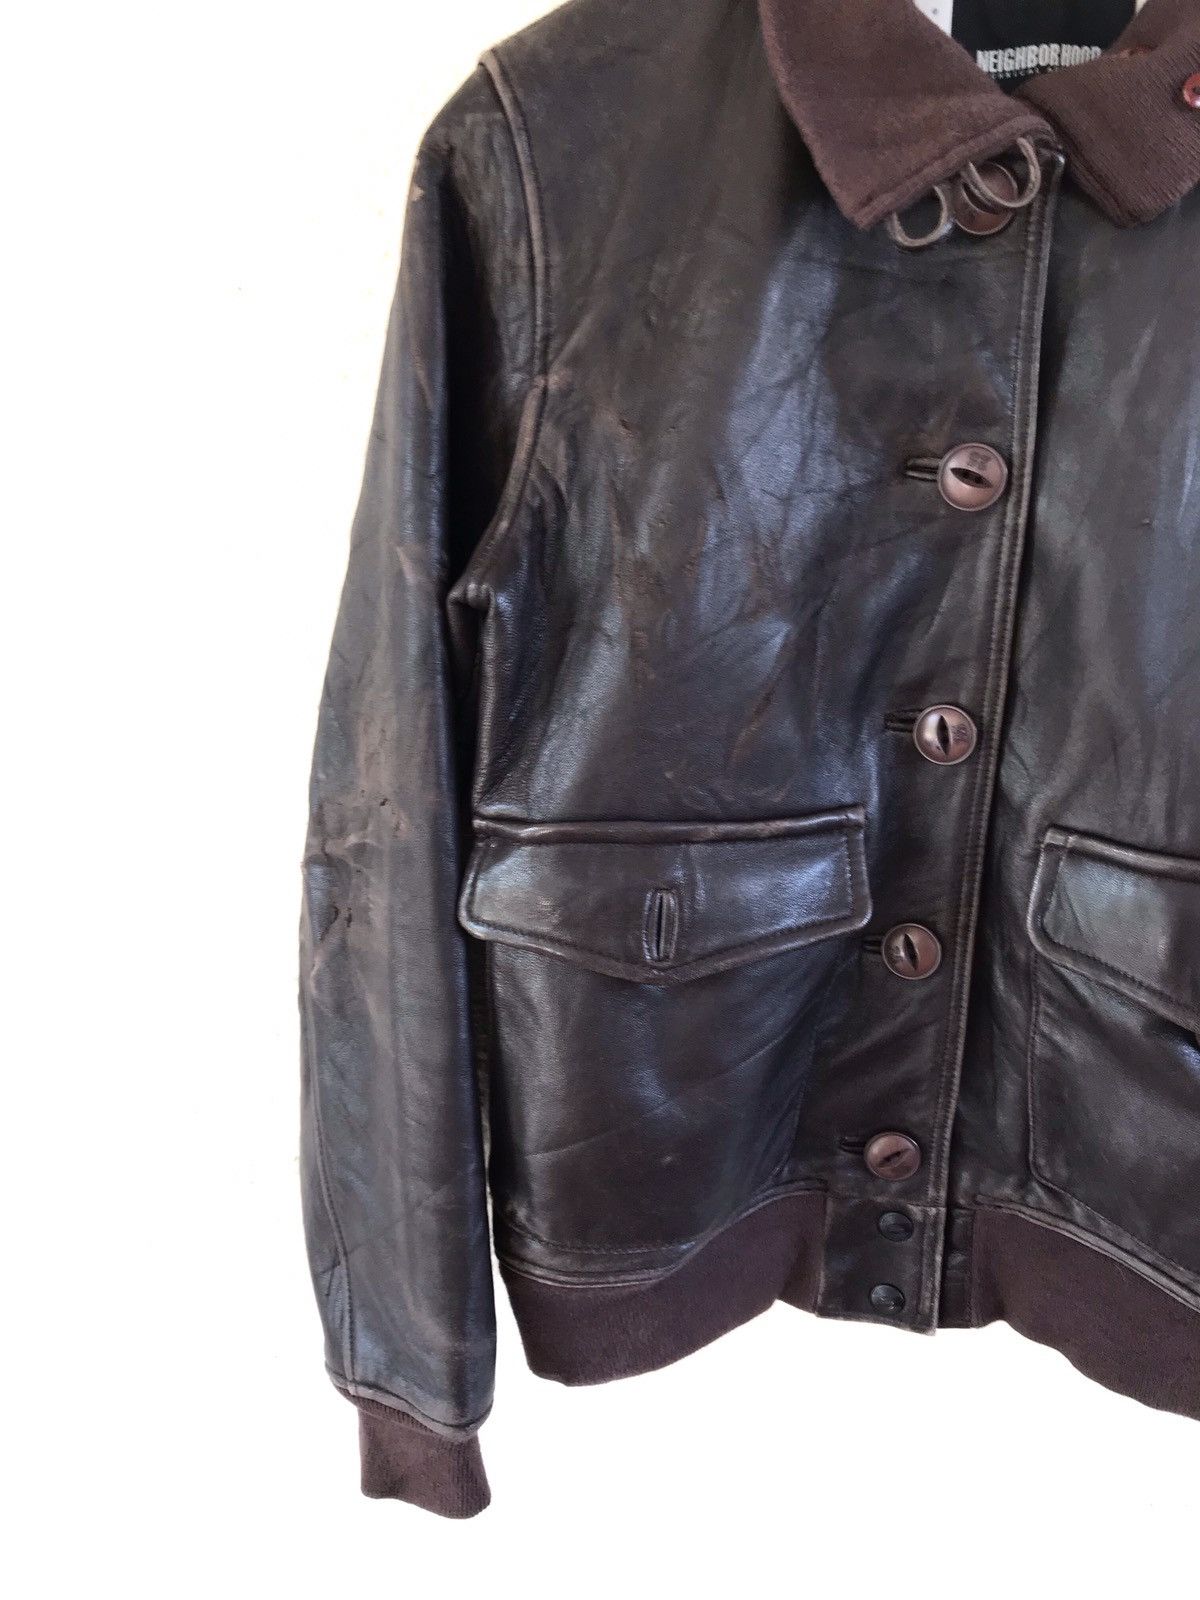 Neighborhood Leather Jacket - 6